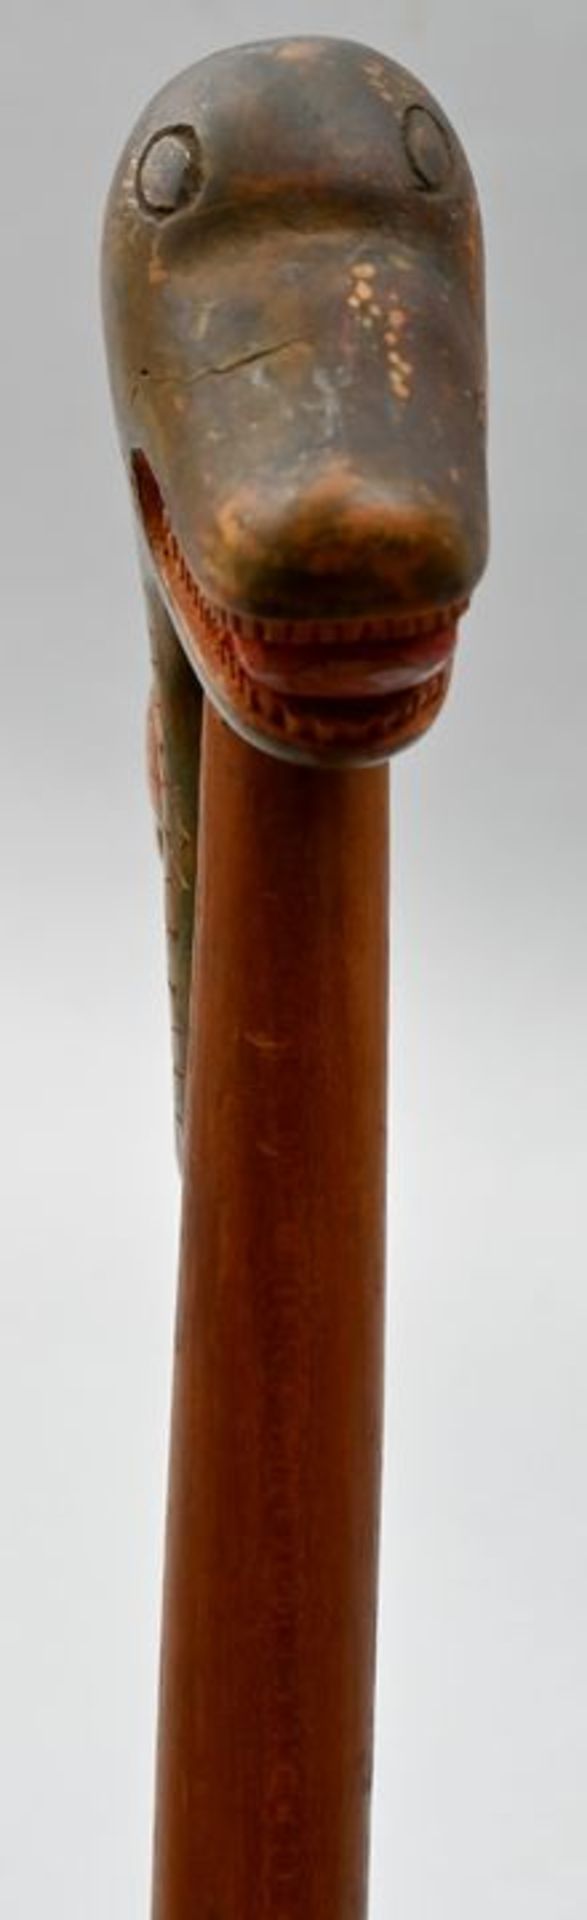 Schäferstock, Mittelmeerraum (Griechenland/Kreta), 20. Jh.Sog. Heri-Griff, Holz, beschnitzt - Bild 3 aus 3